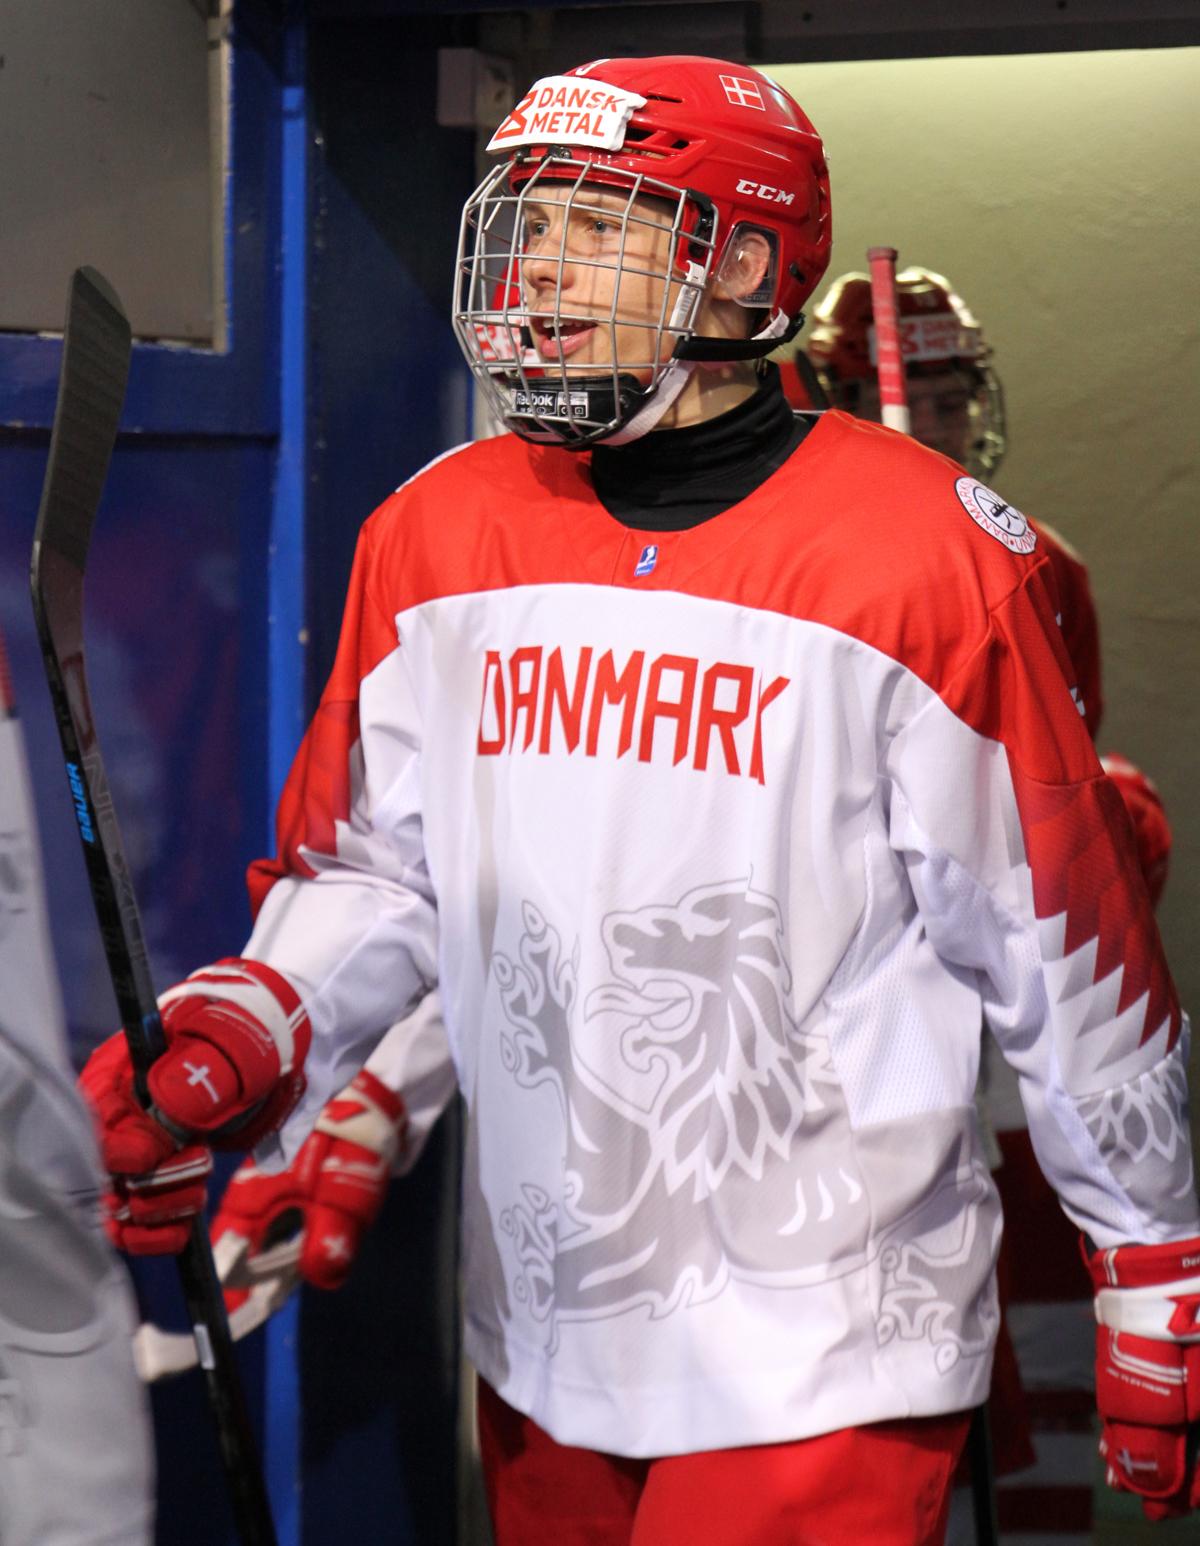 Photo hockey match Norway - Denmark